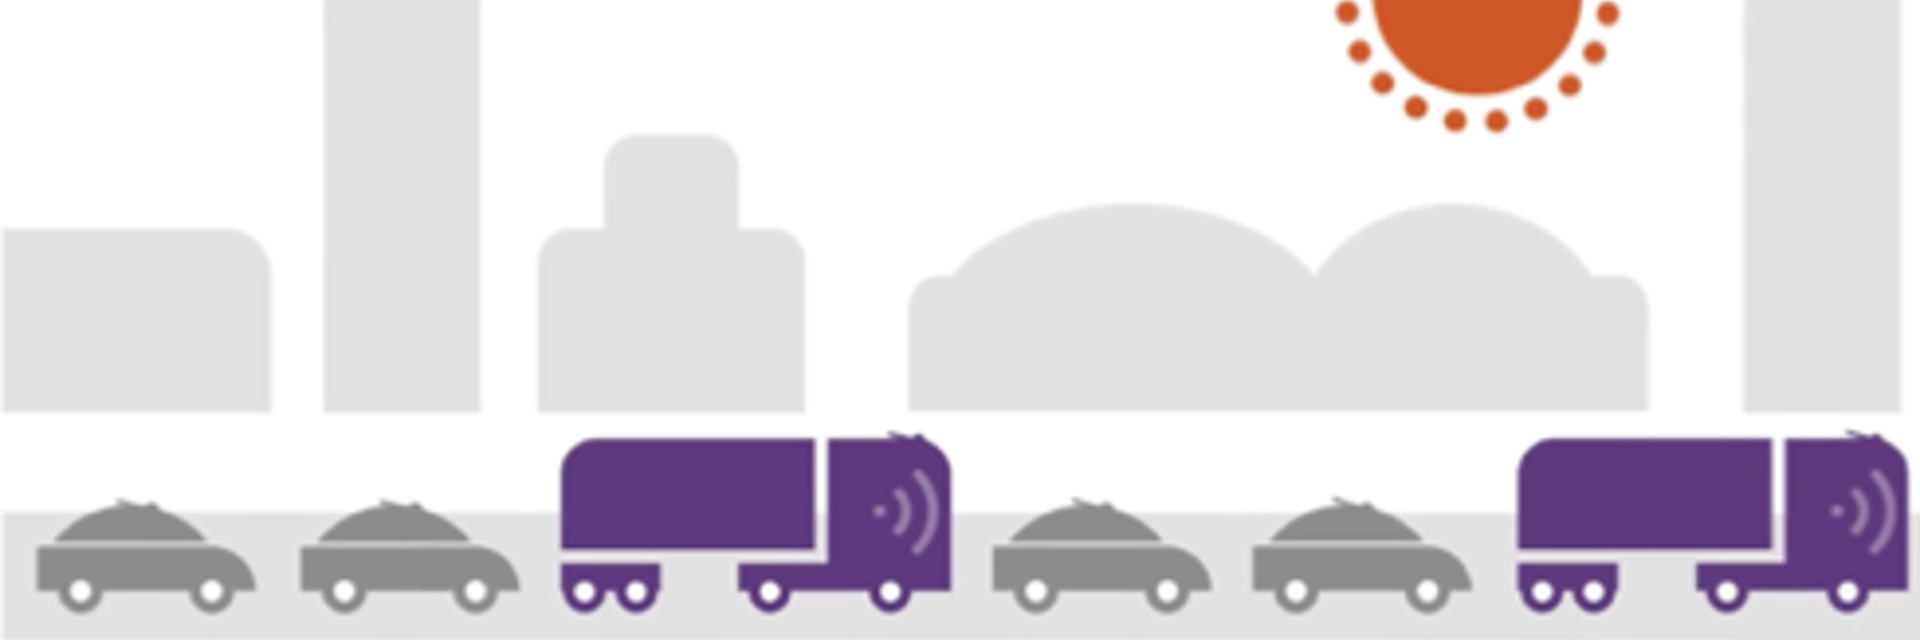 Afbeelding grafisch vrachtwagens en autos in de file.png